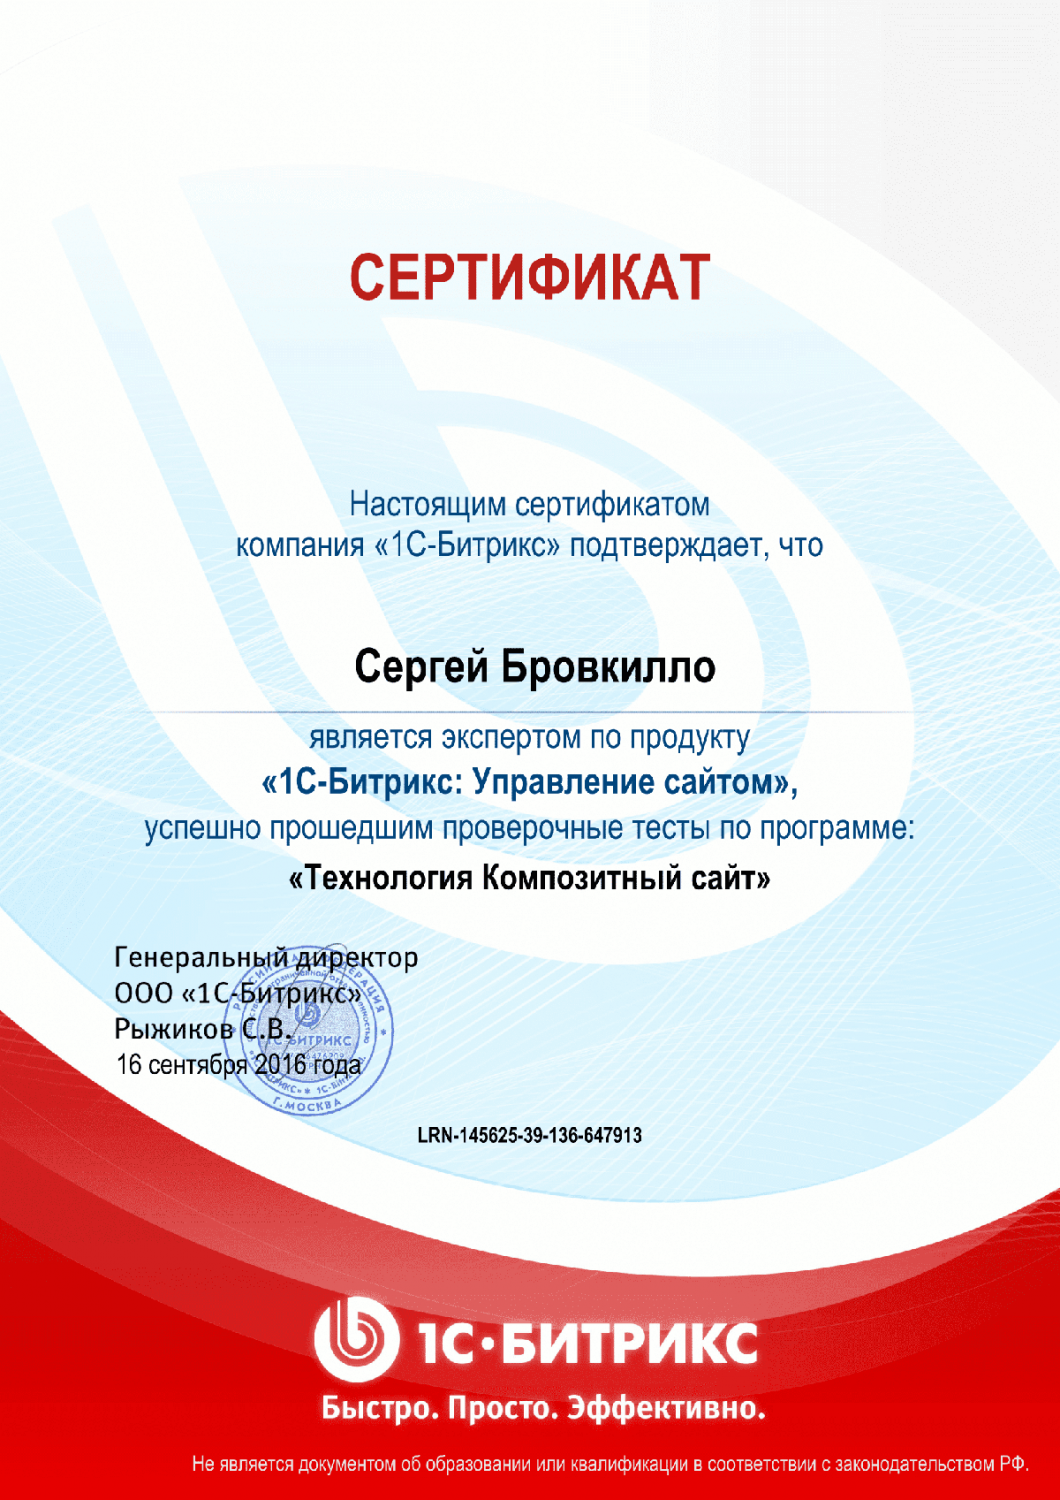 Сертификат "Технология Композитный сайт" в Сыктывкара